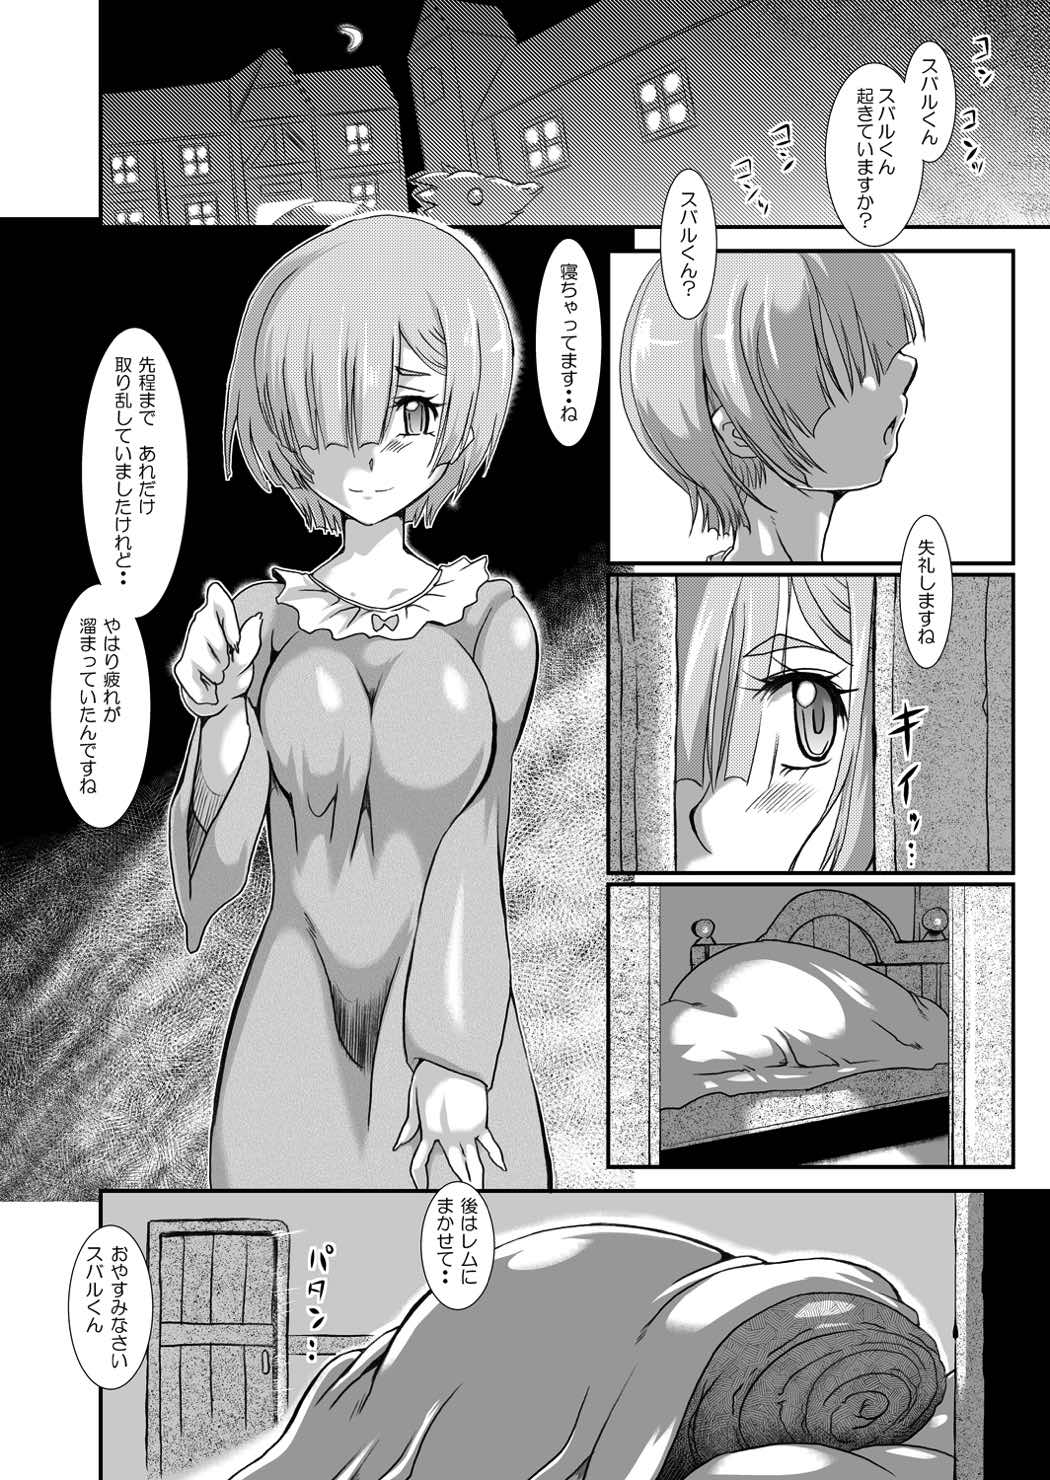 [Furuya (TAKE)] Rem: Rem no Ero Manga (Re:Zero kara Hajimeru Isekai Seikatsu) [Digital] page 3 full